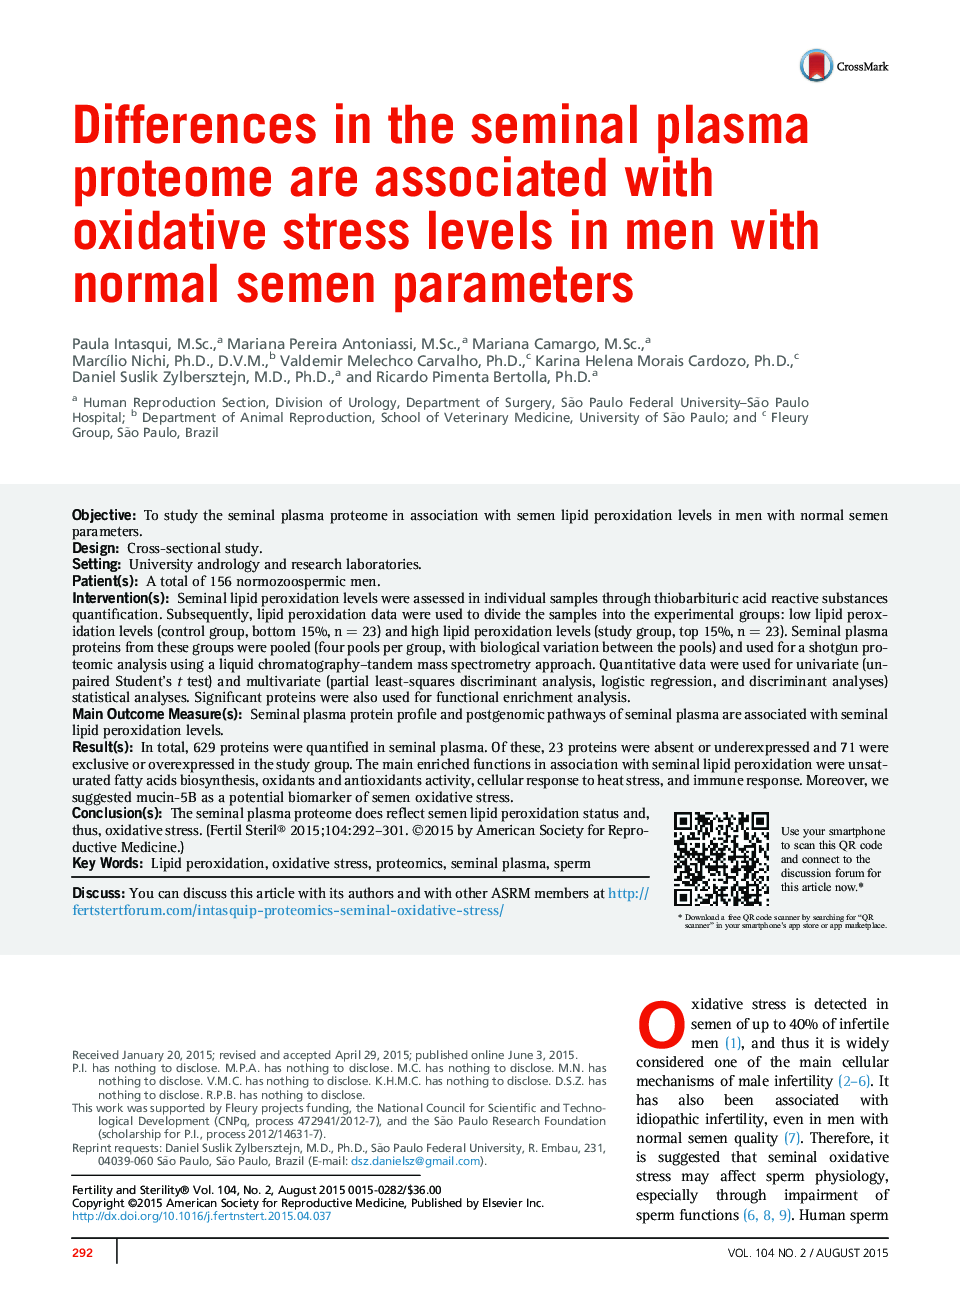 تفاوت در پروتئوم پلاسمای مزانشیمی با سطوح استرس اکسیداتیو در مردان با پارامترهای ملایم طبیعی همراه است 